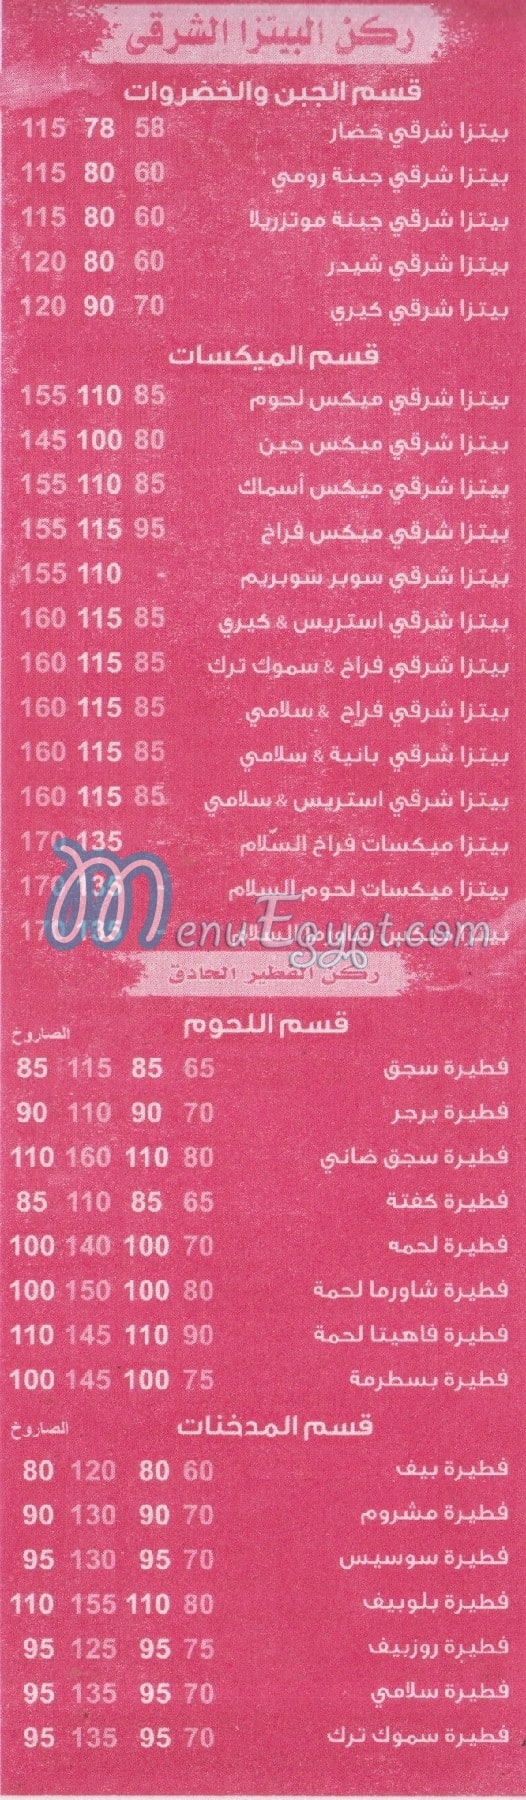 Al Salam Al Moqatam menu Egypt 1